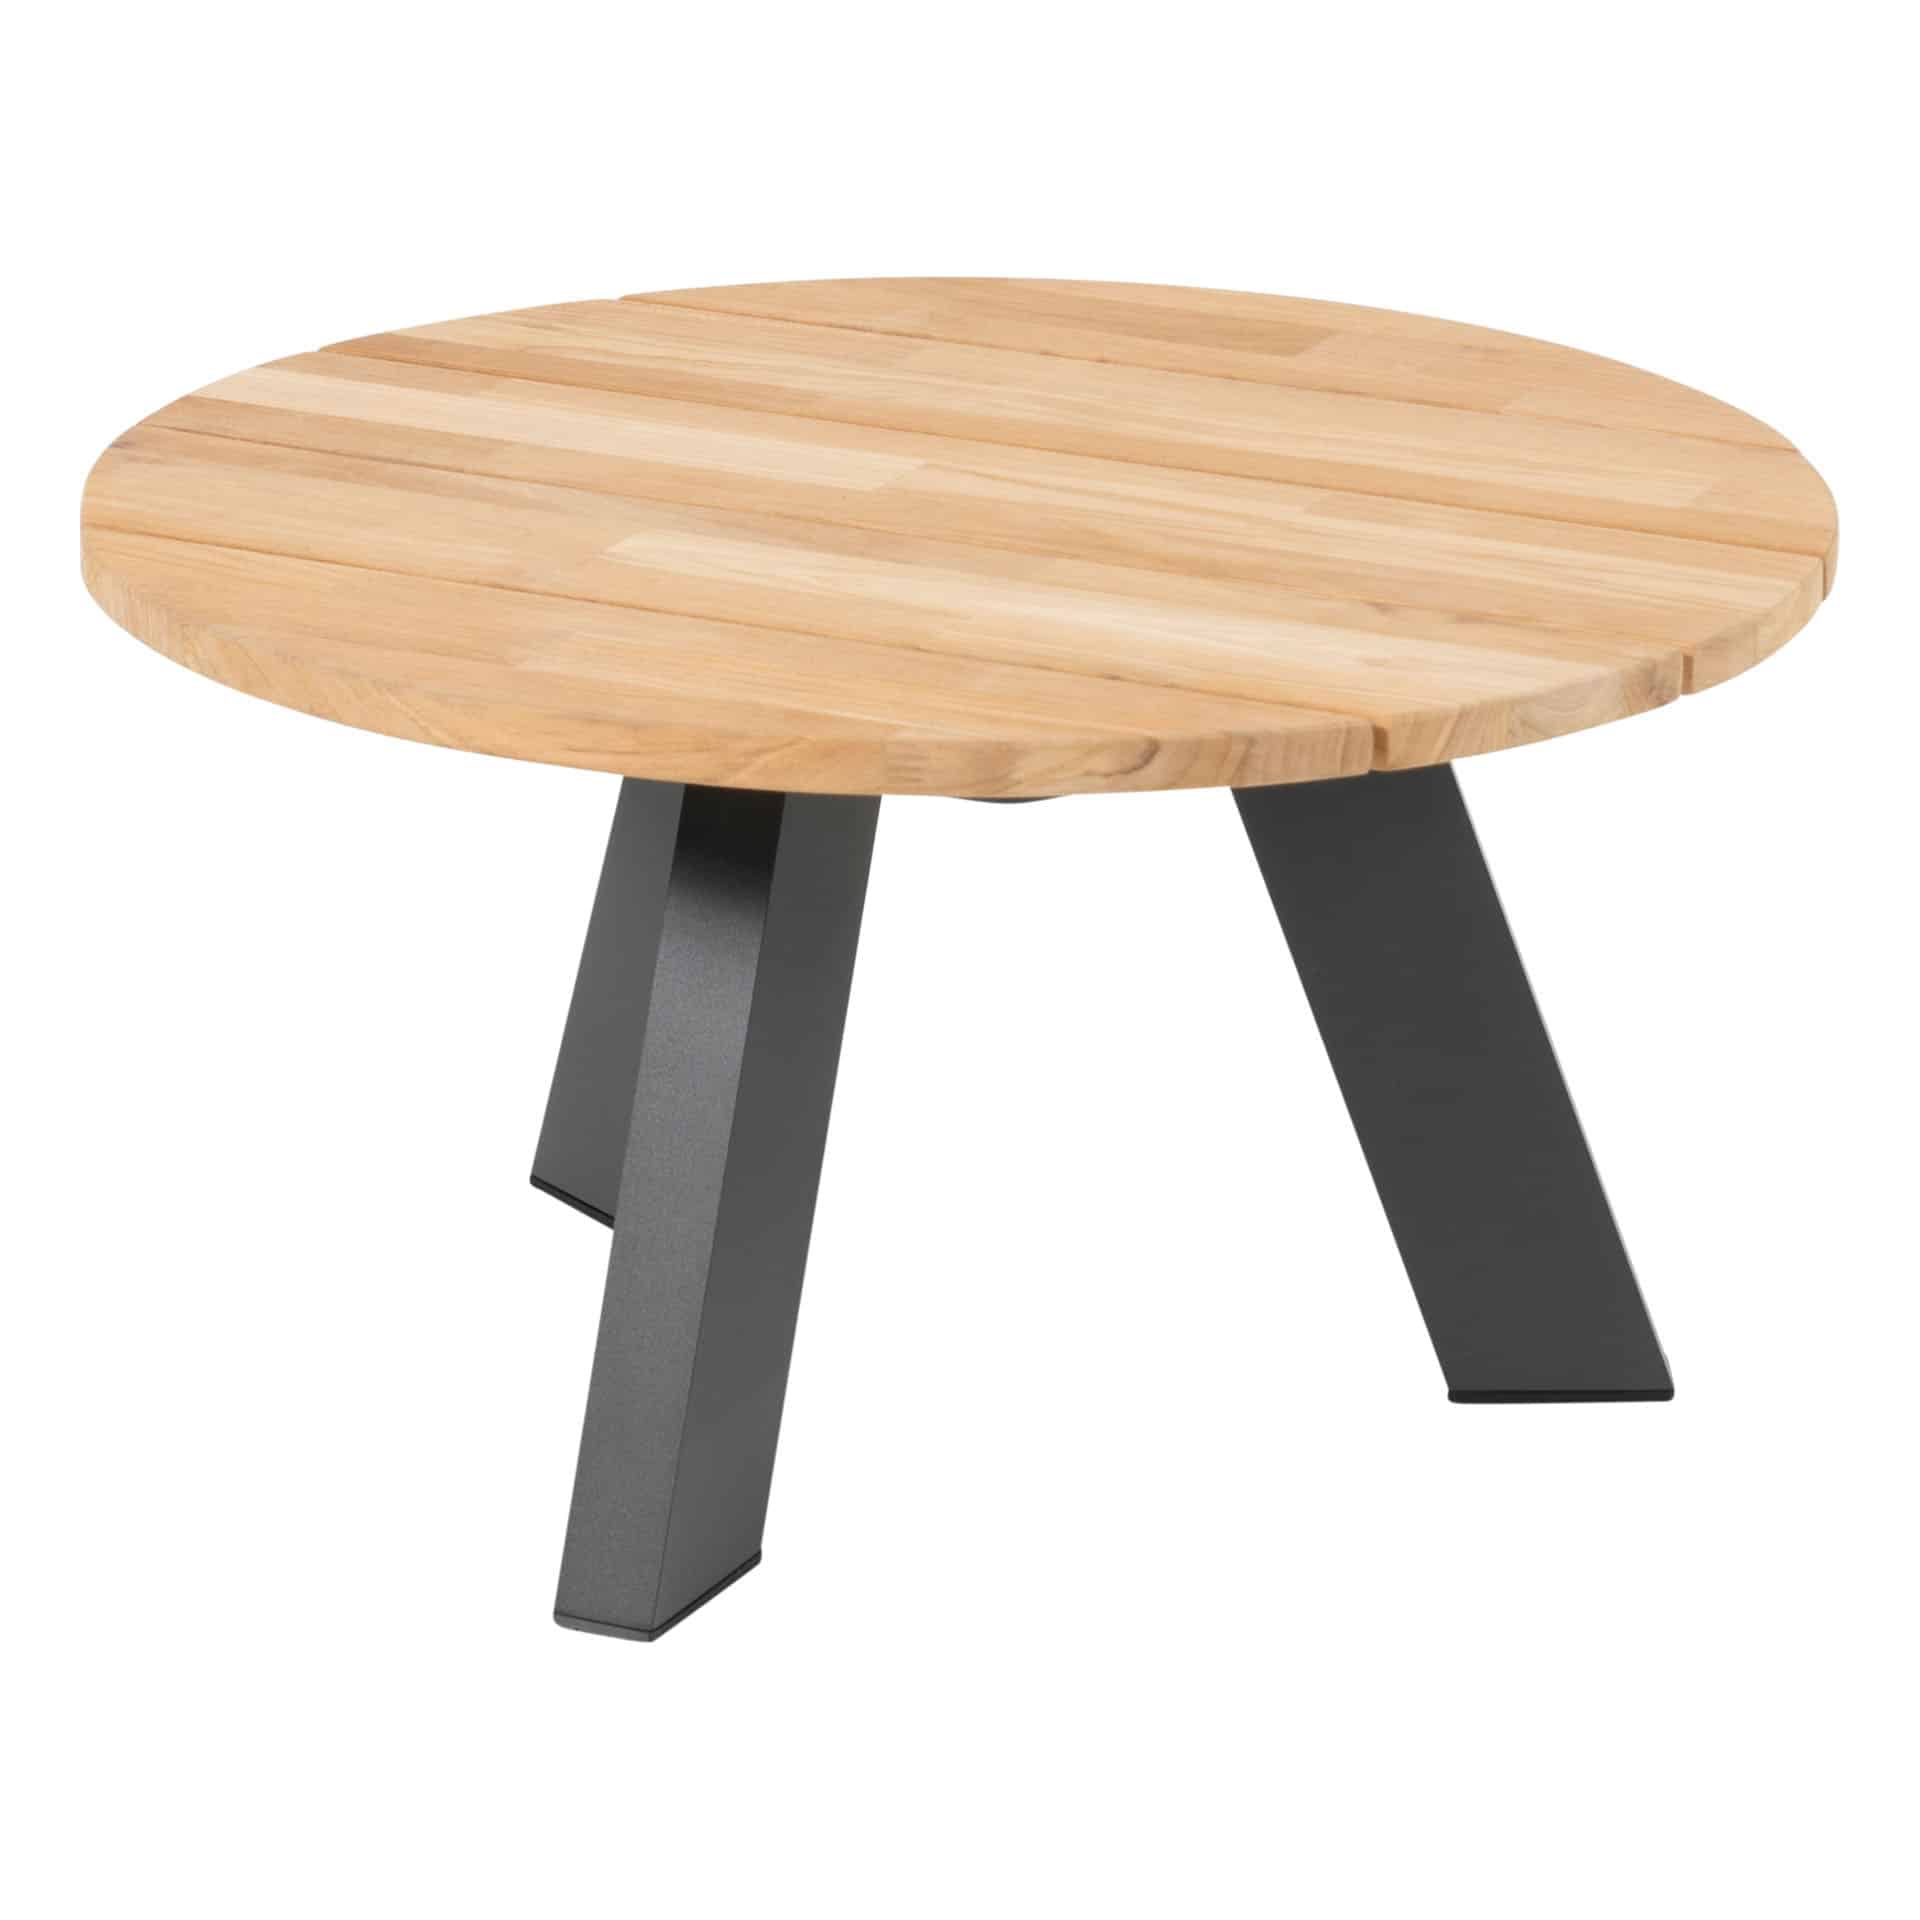 4 Seasons Outdoor Cosmic ronde(ø65) salontafel met teak tafelblad en antraciet aluminium frame.